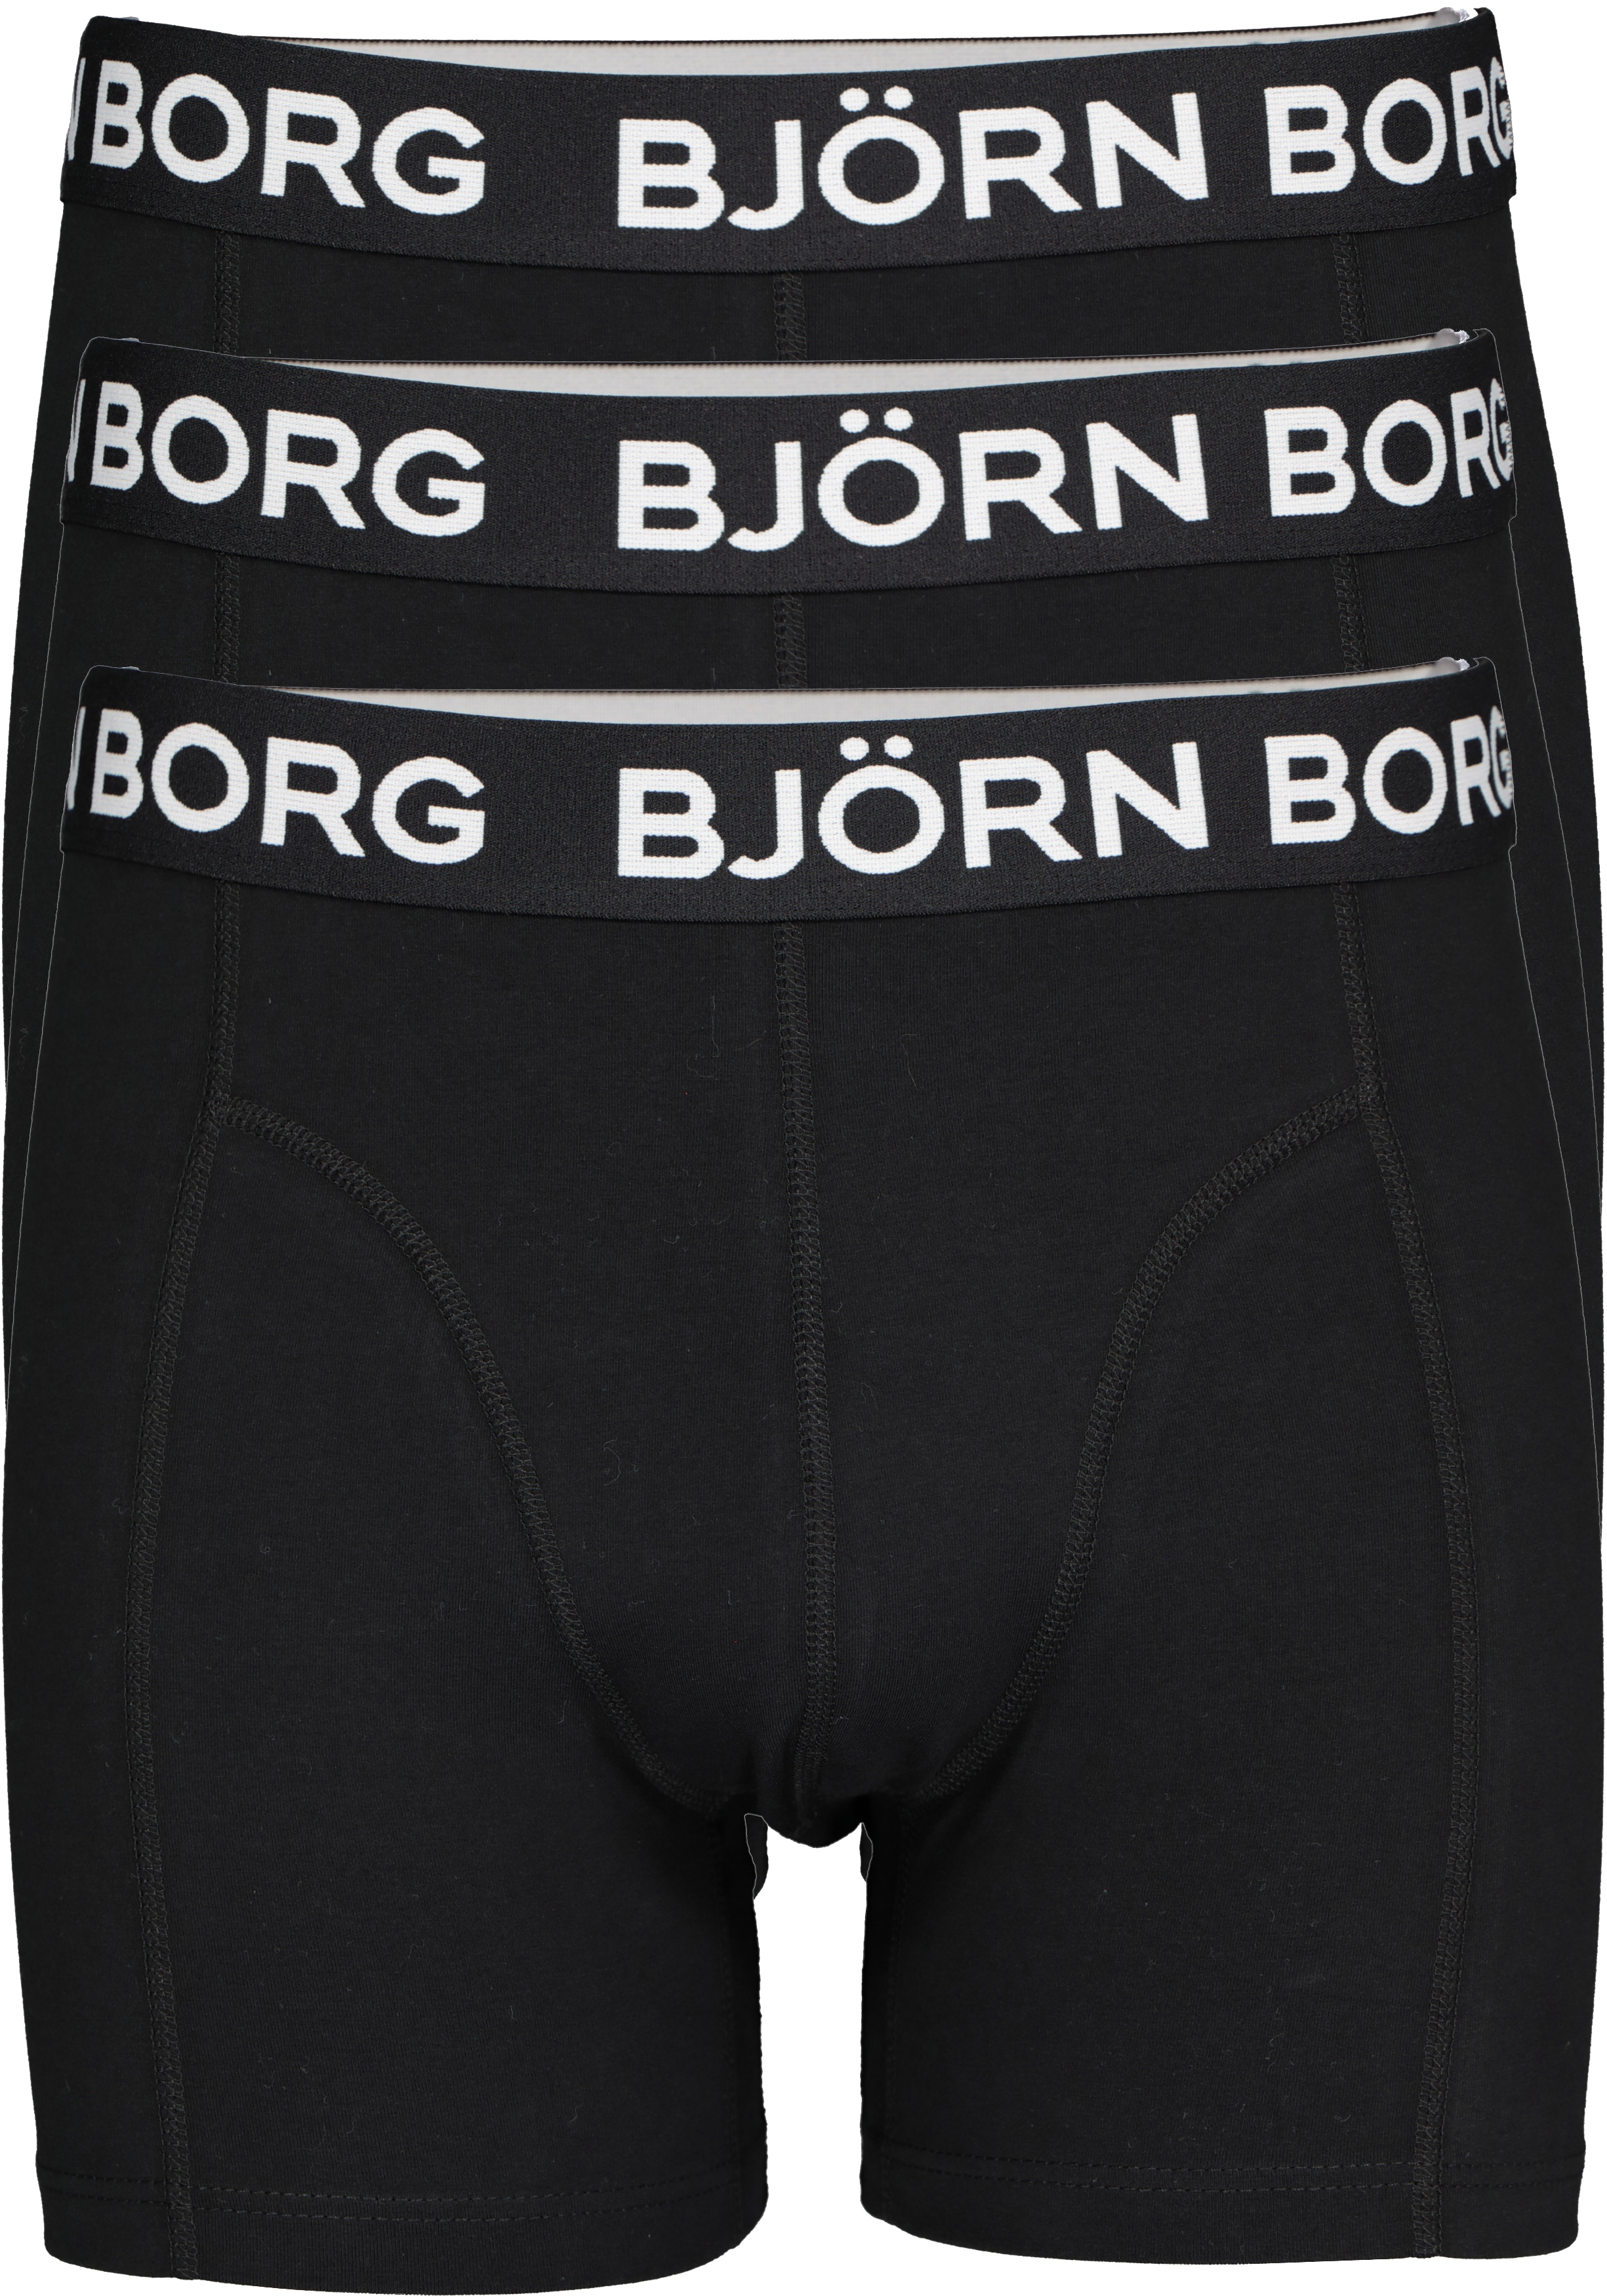 zeker Ga door Excentriek Bjorn Borg boxershorts Core (3-pack), heren boxers normale lengte, zwart -  Zomer SALE tot 50% korting